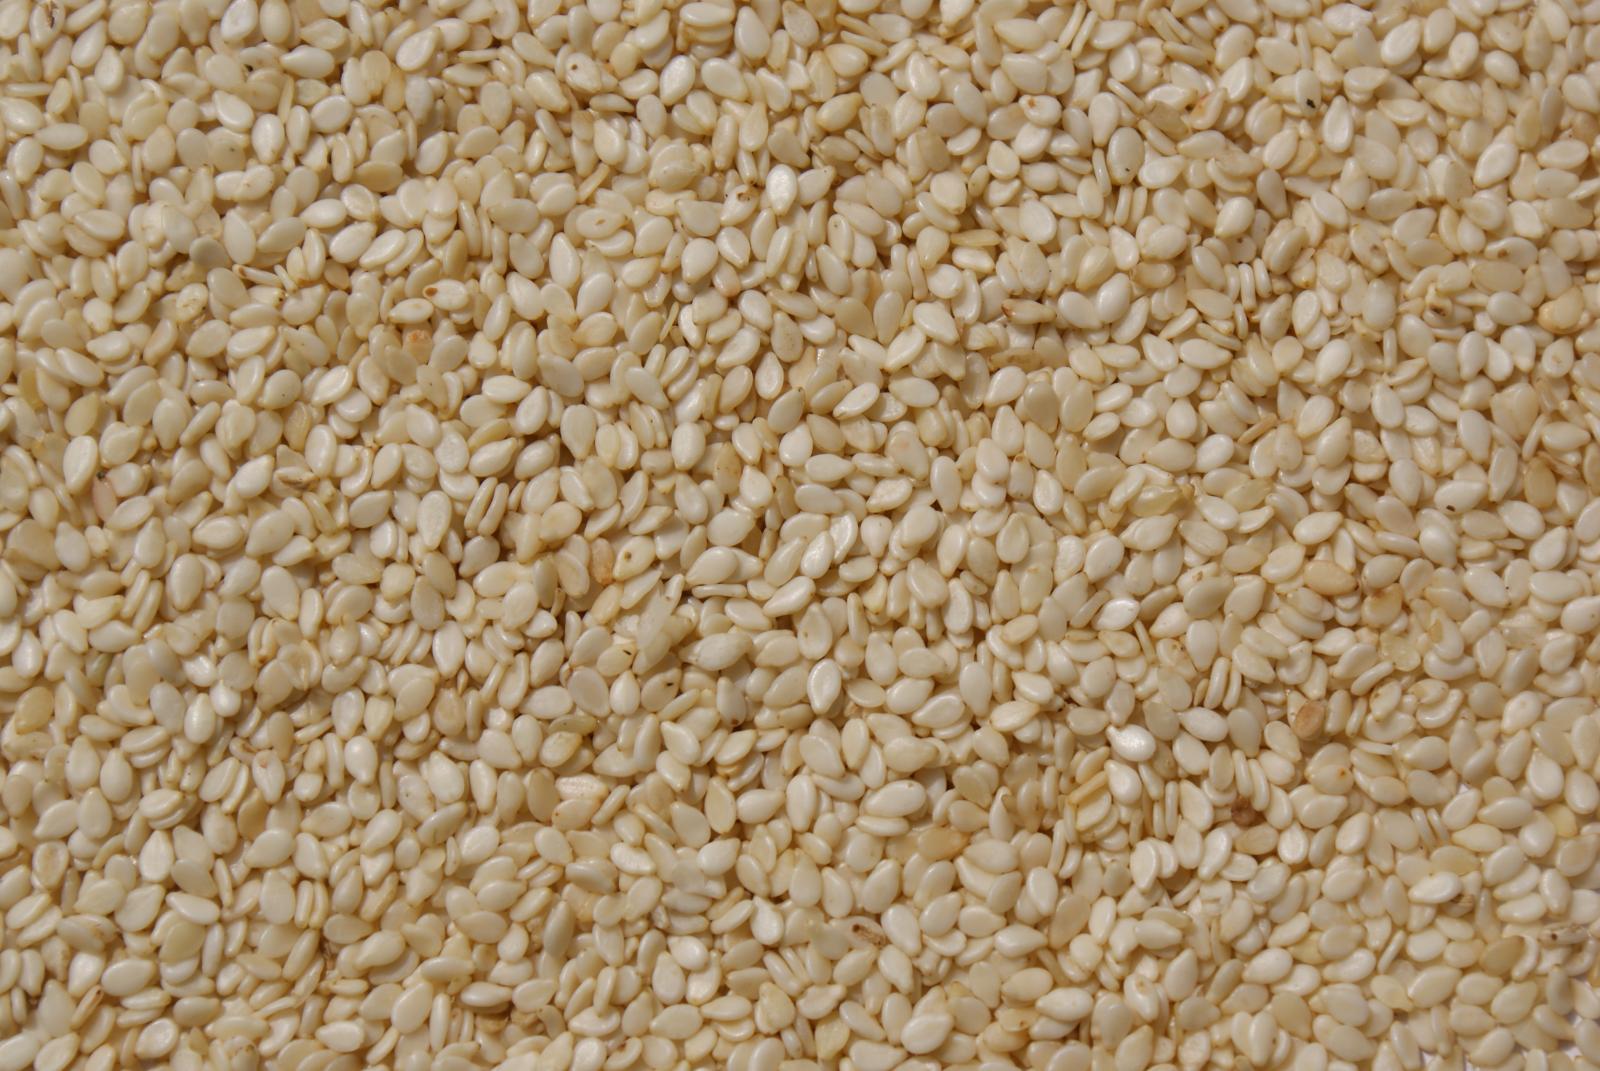 Sesame (Sesamum indicum) seeds